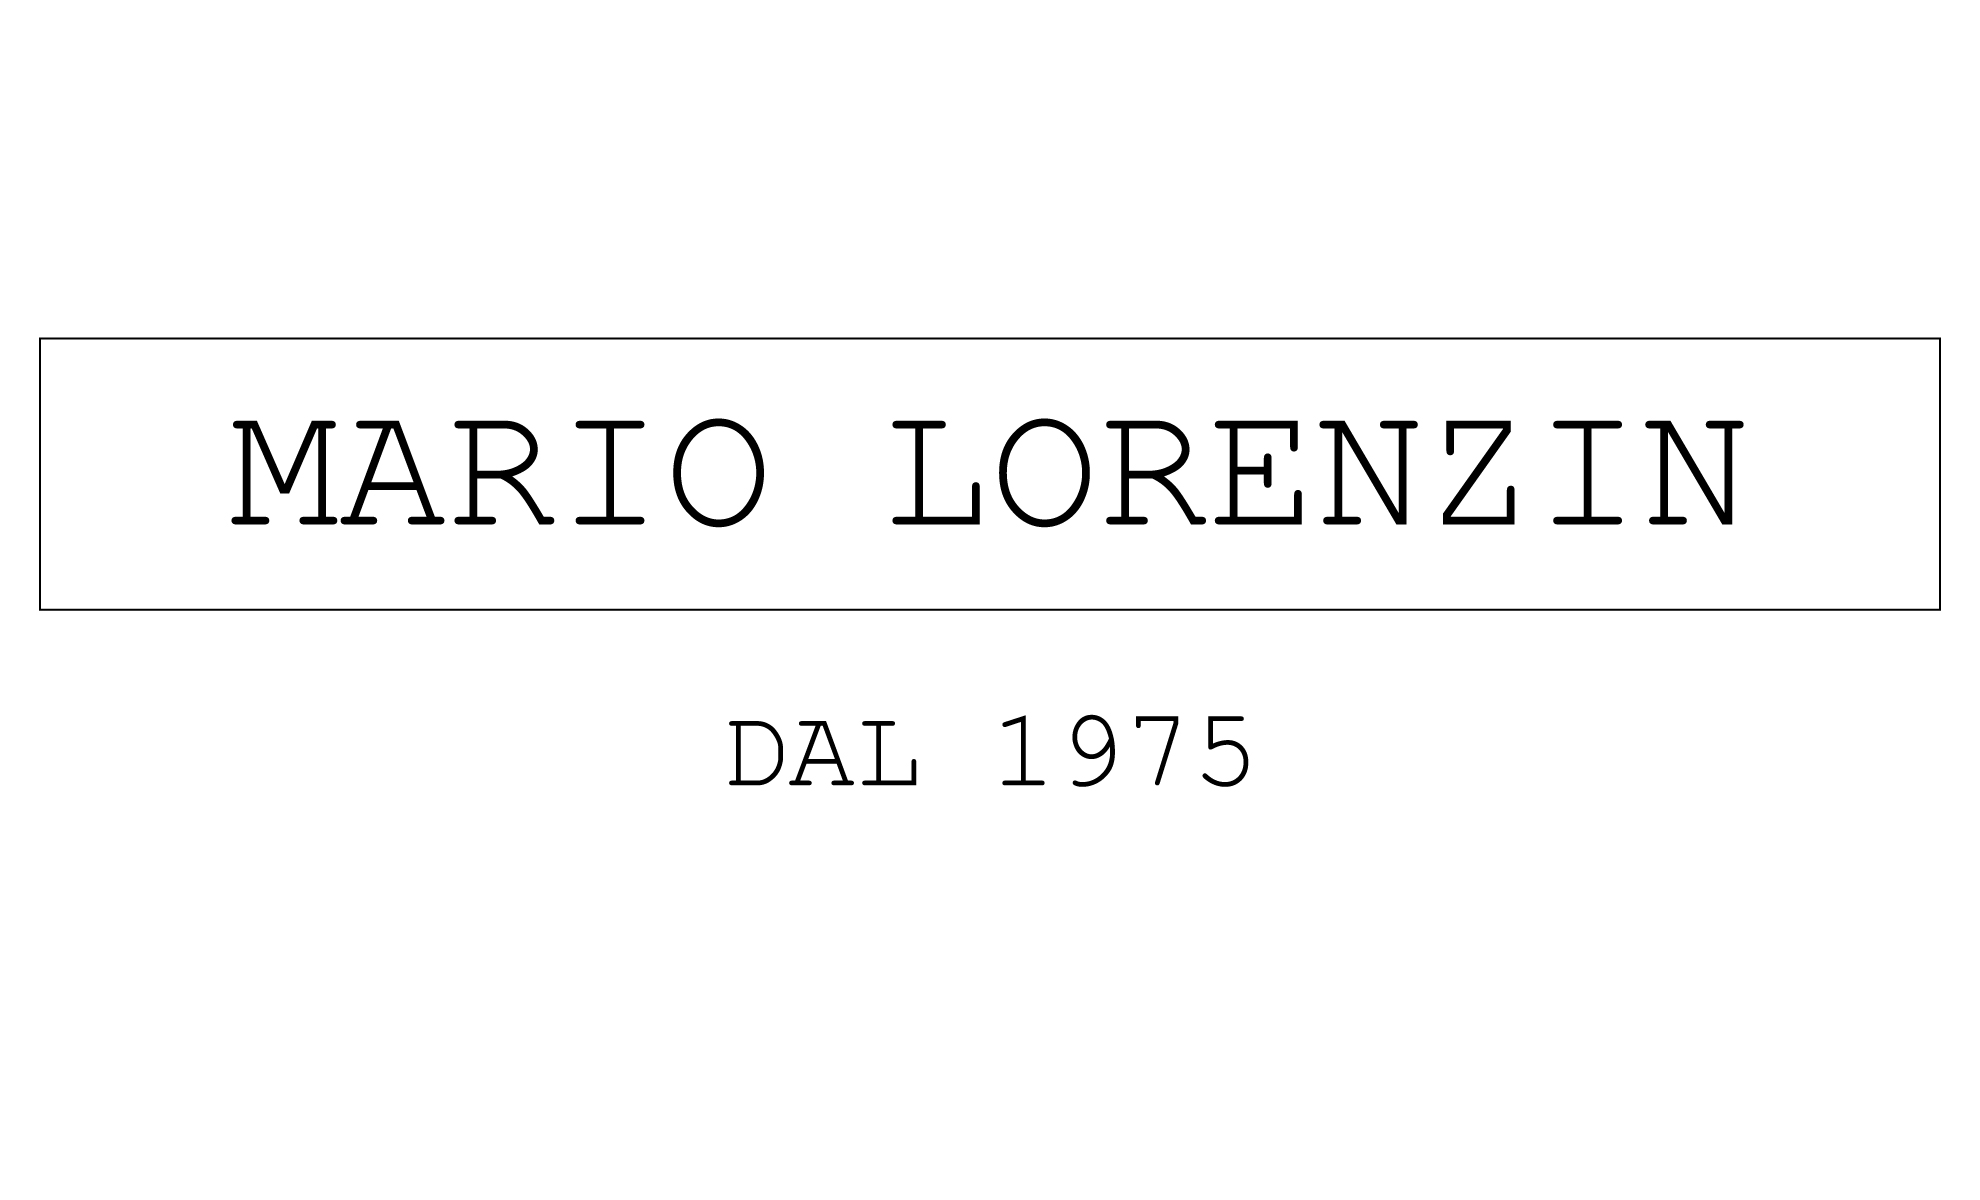 MARIO LORENZIN